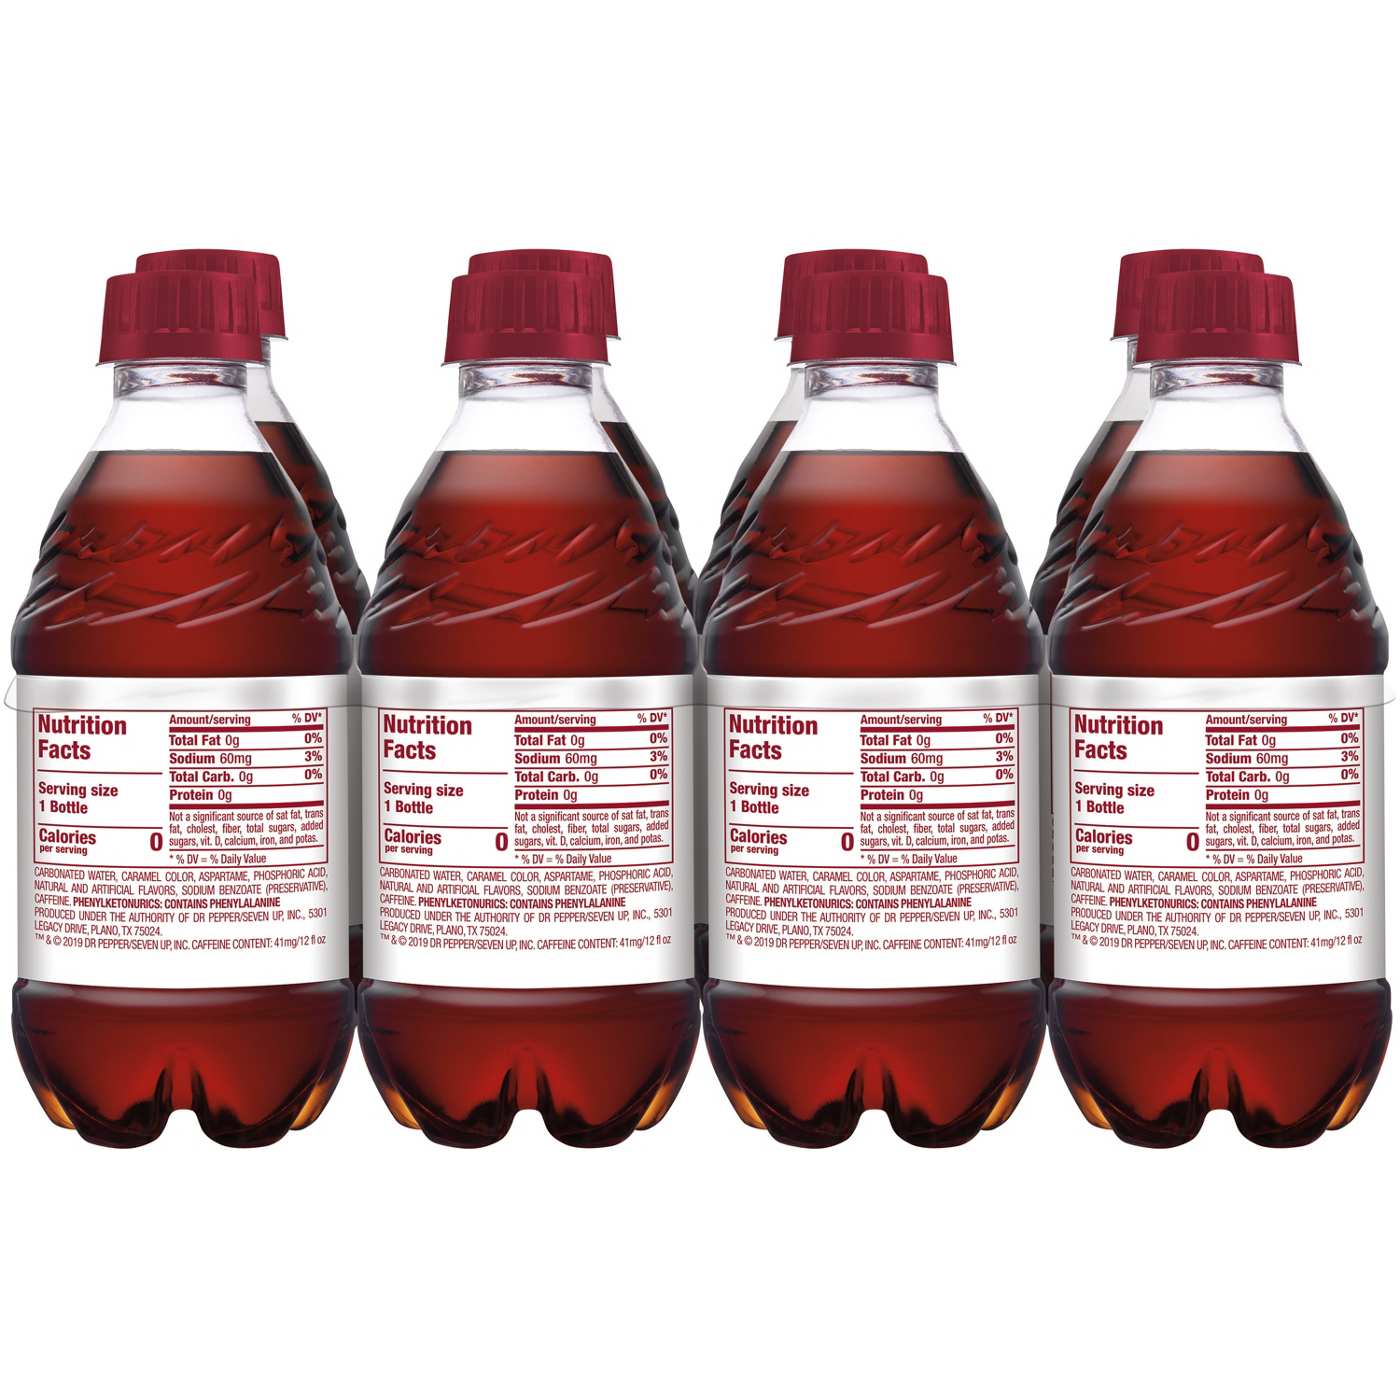 Dr Pepper Diet Soda 12 oz Bottles; image 5 of 7